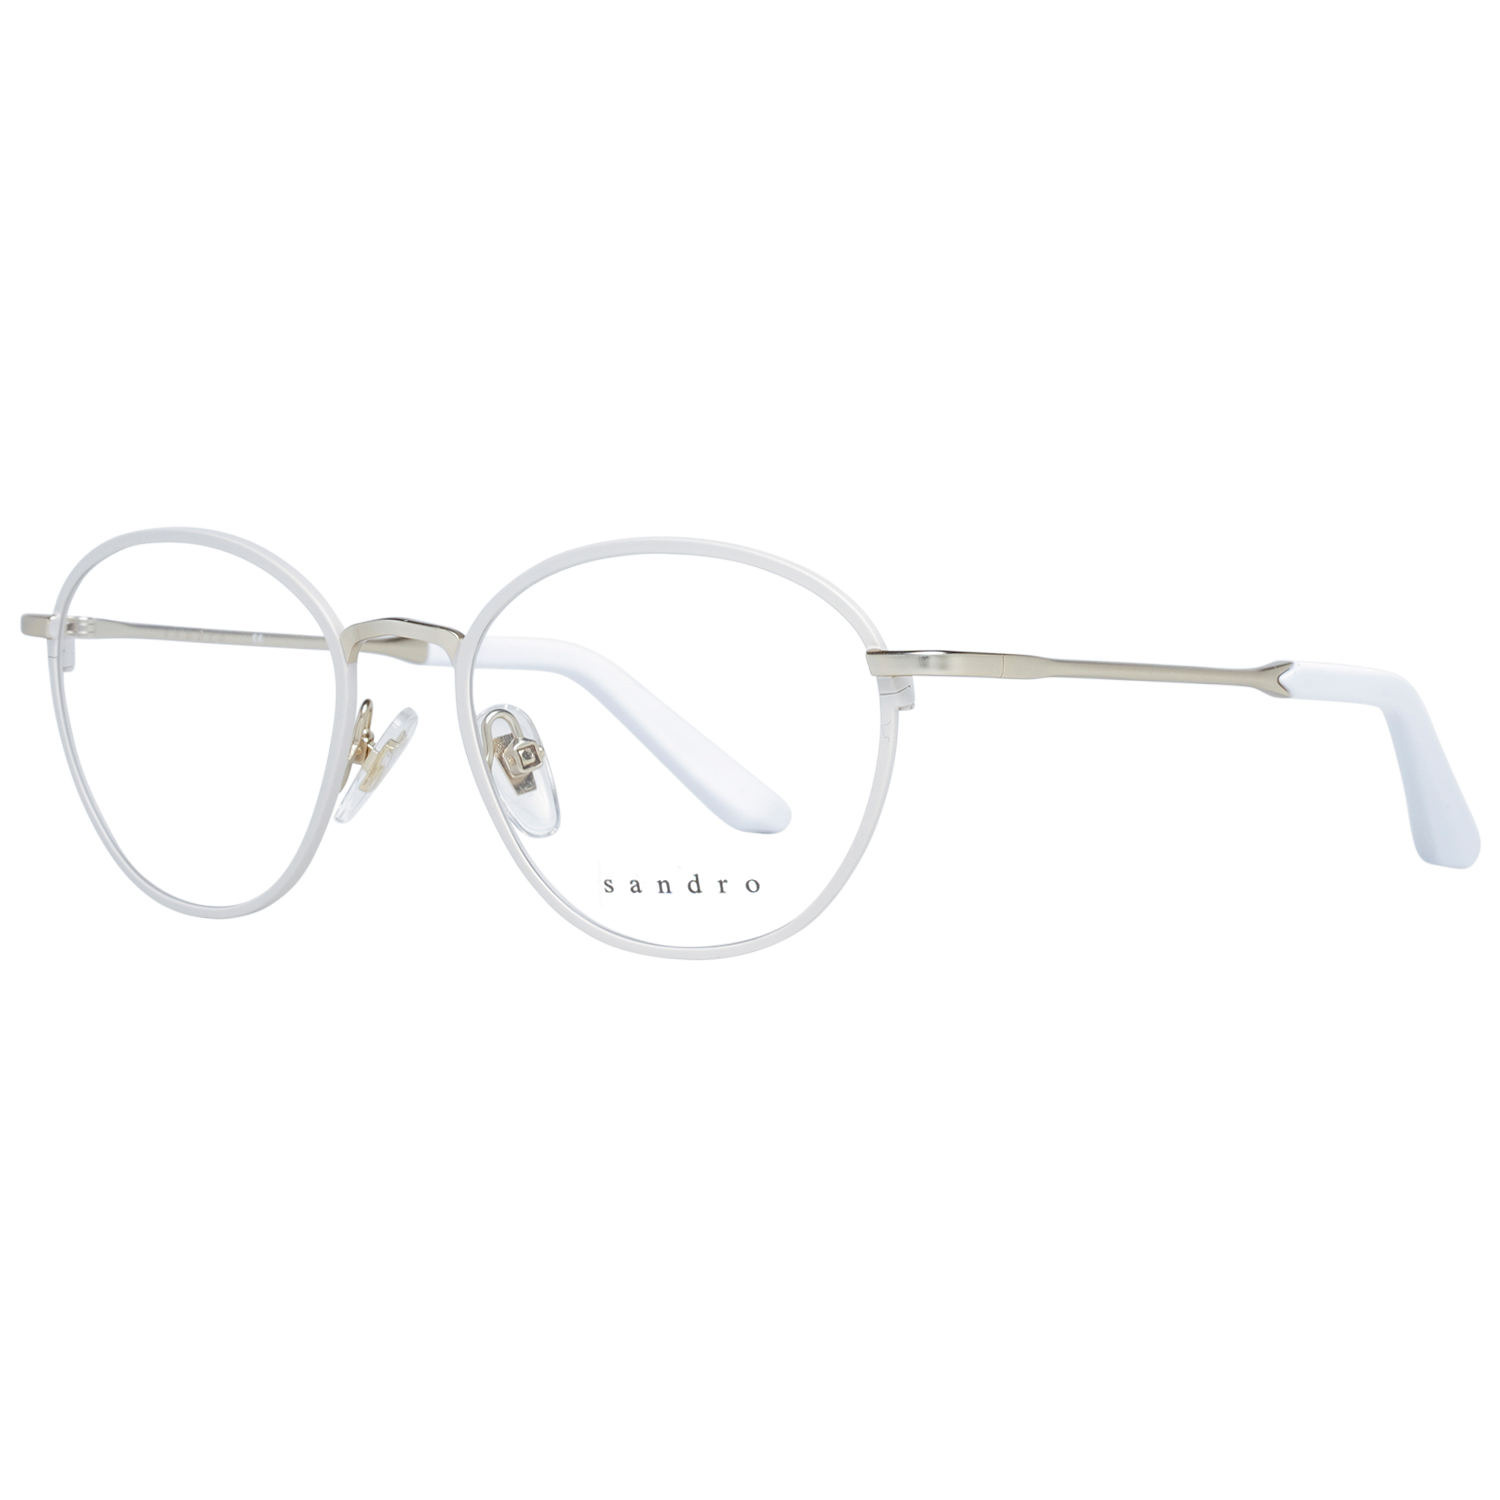 Sandro Frames Sandro Optical Frame SD4008 933 49 Eyeglasses Eyewear UK USA Australia 